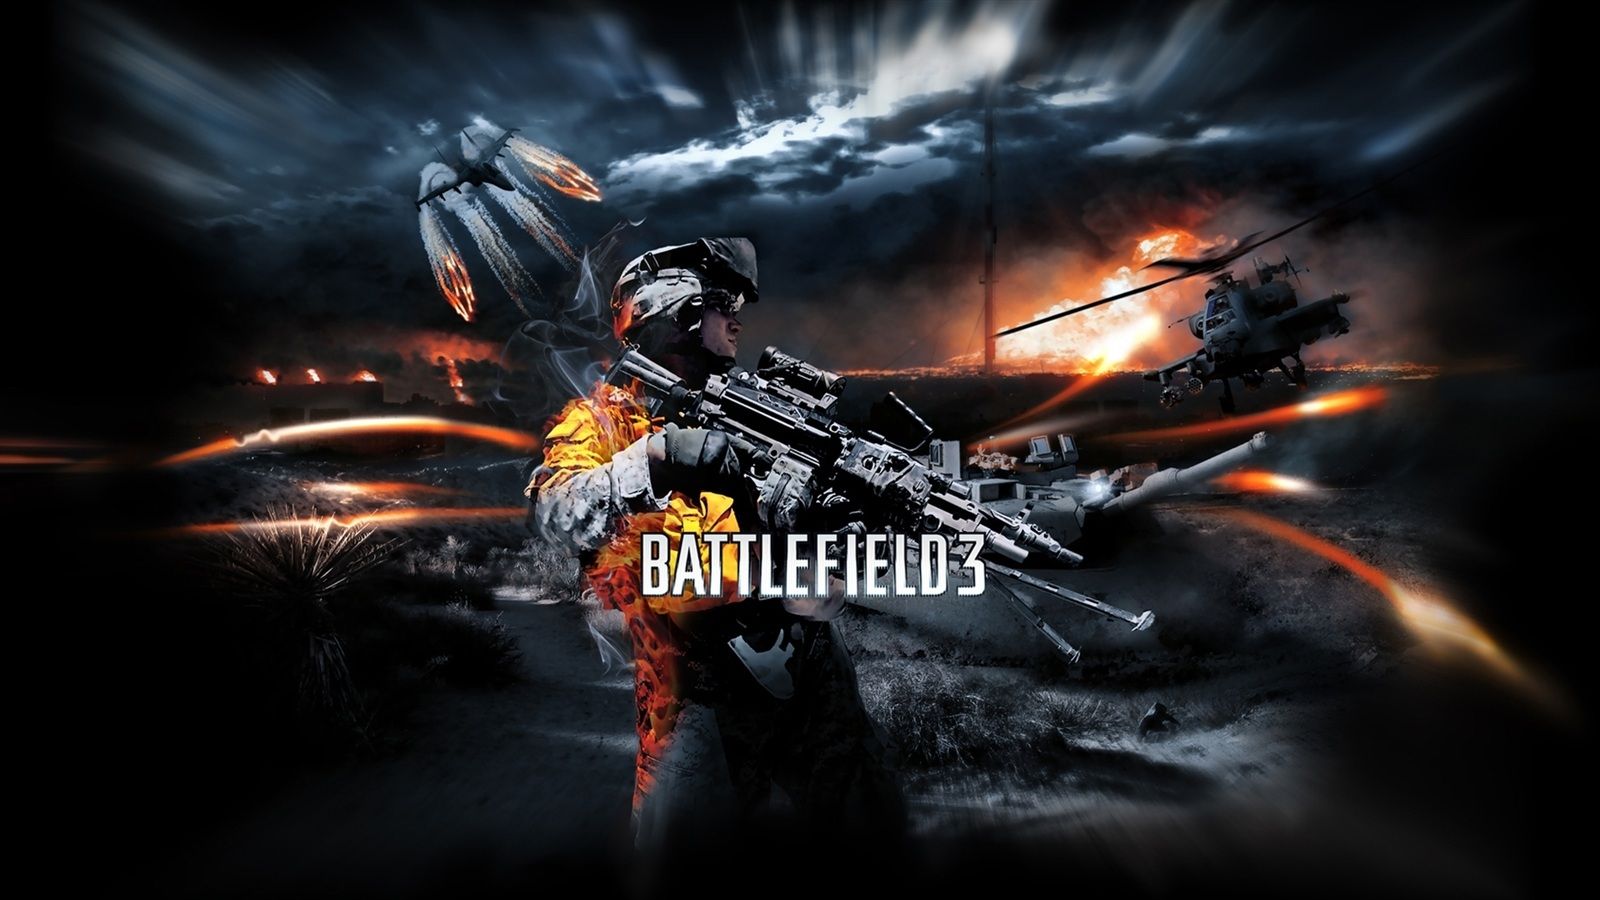 Battlefield 3 game HD Wallpaper | 1600x900 resolution wallpaper ...